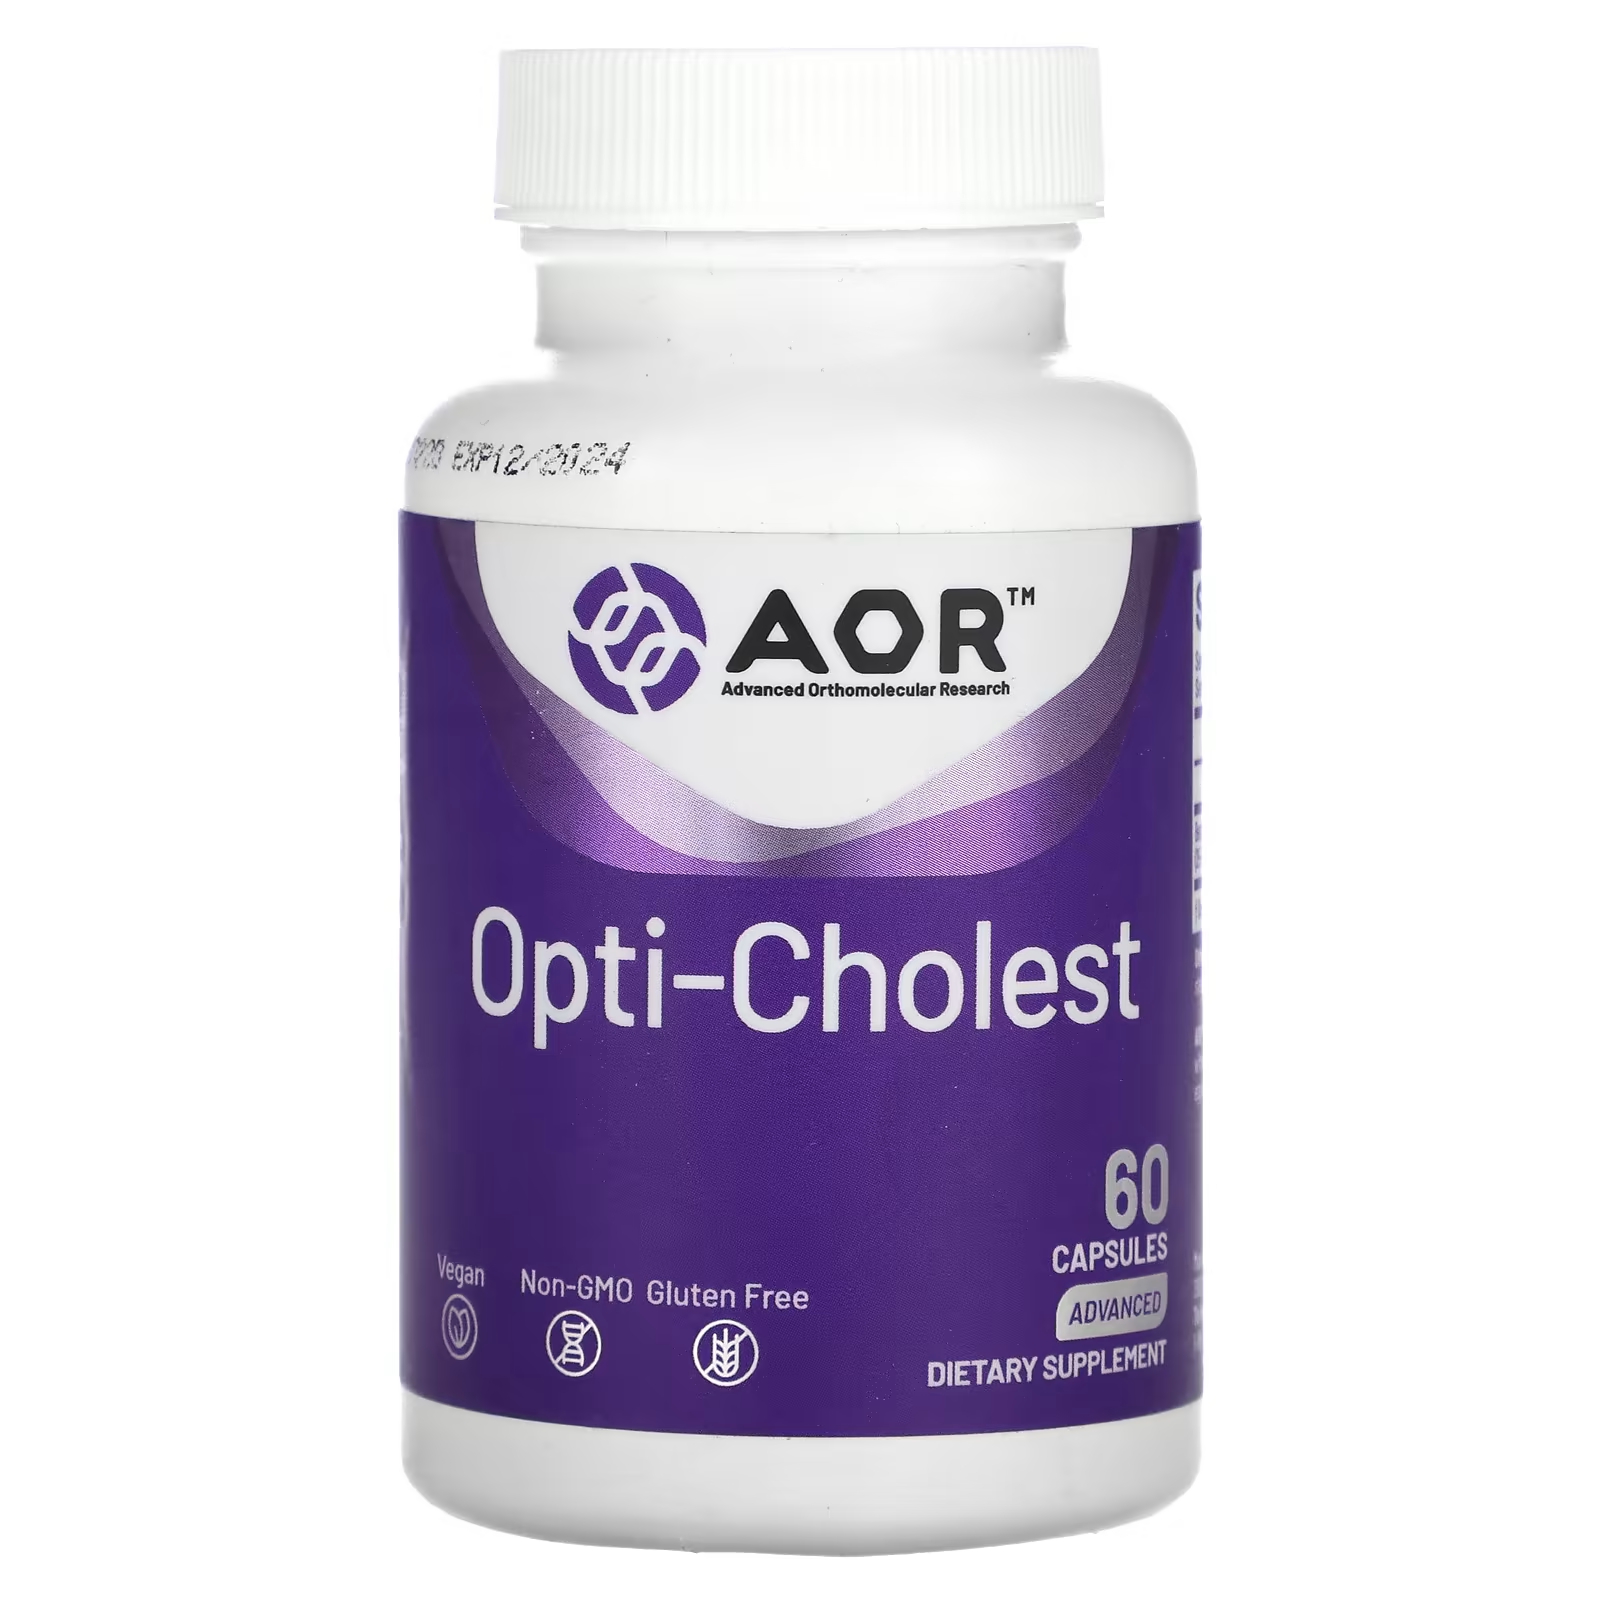 Передовые ортомолекулярные исследования AOR Opti-Cholest 60 капсул Advanced Orthomolecular Research AOR